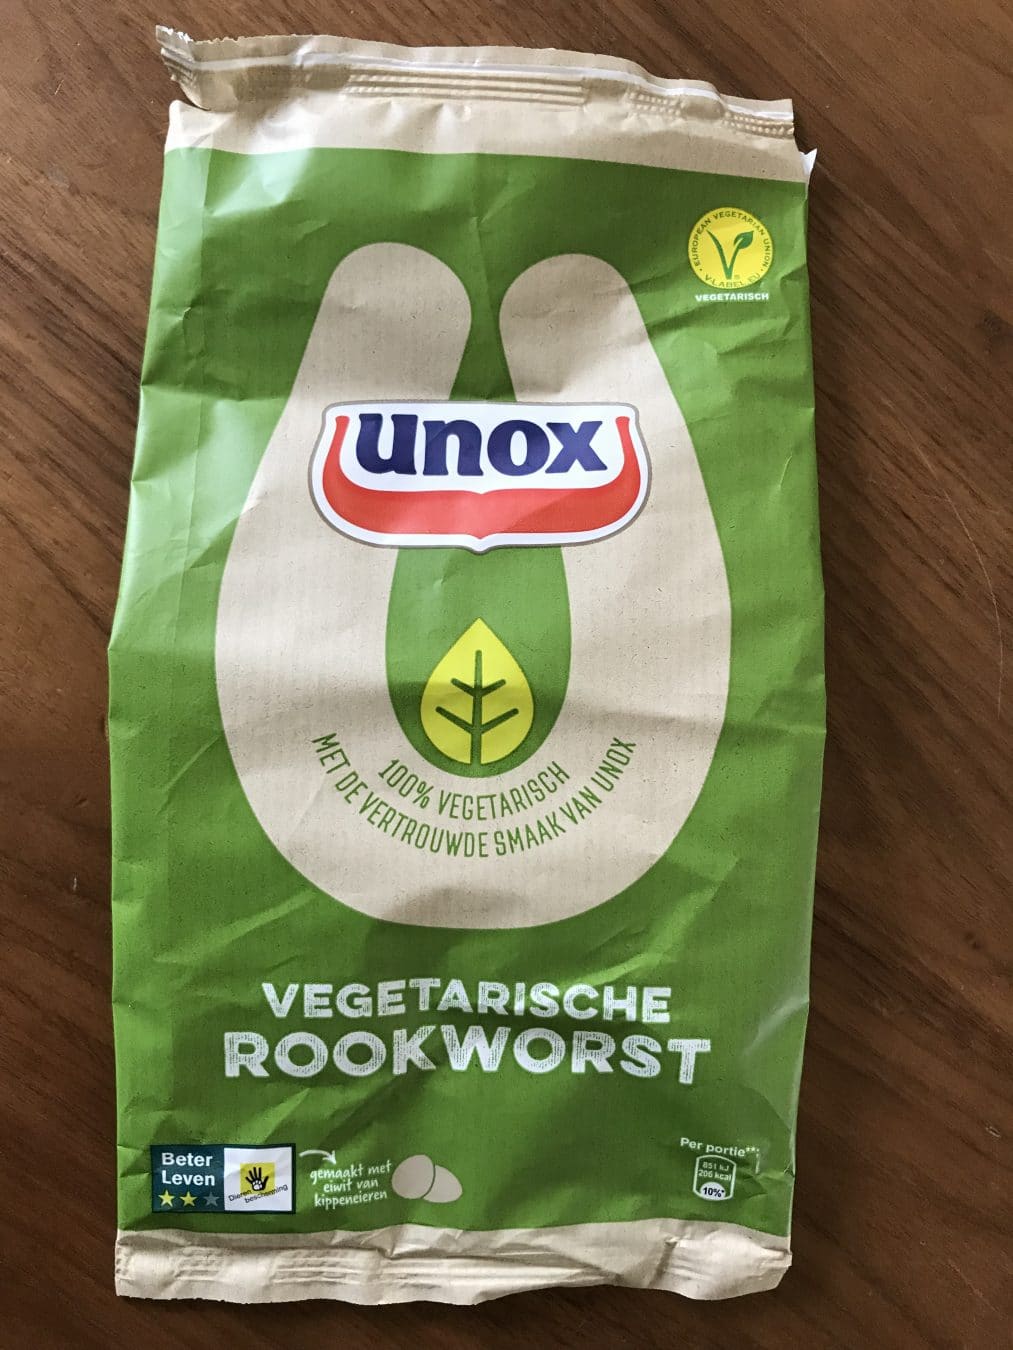 Review: UNOX vegetarische rookworst